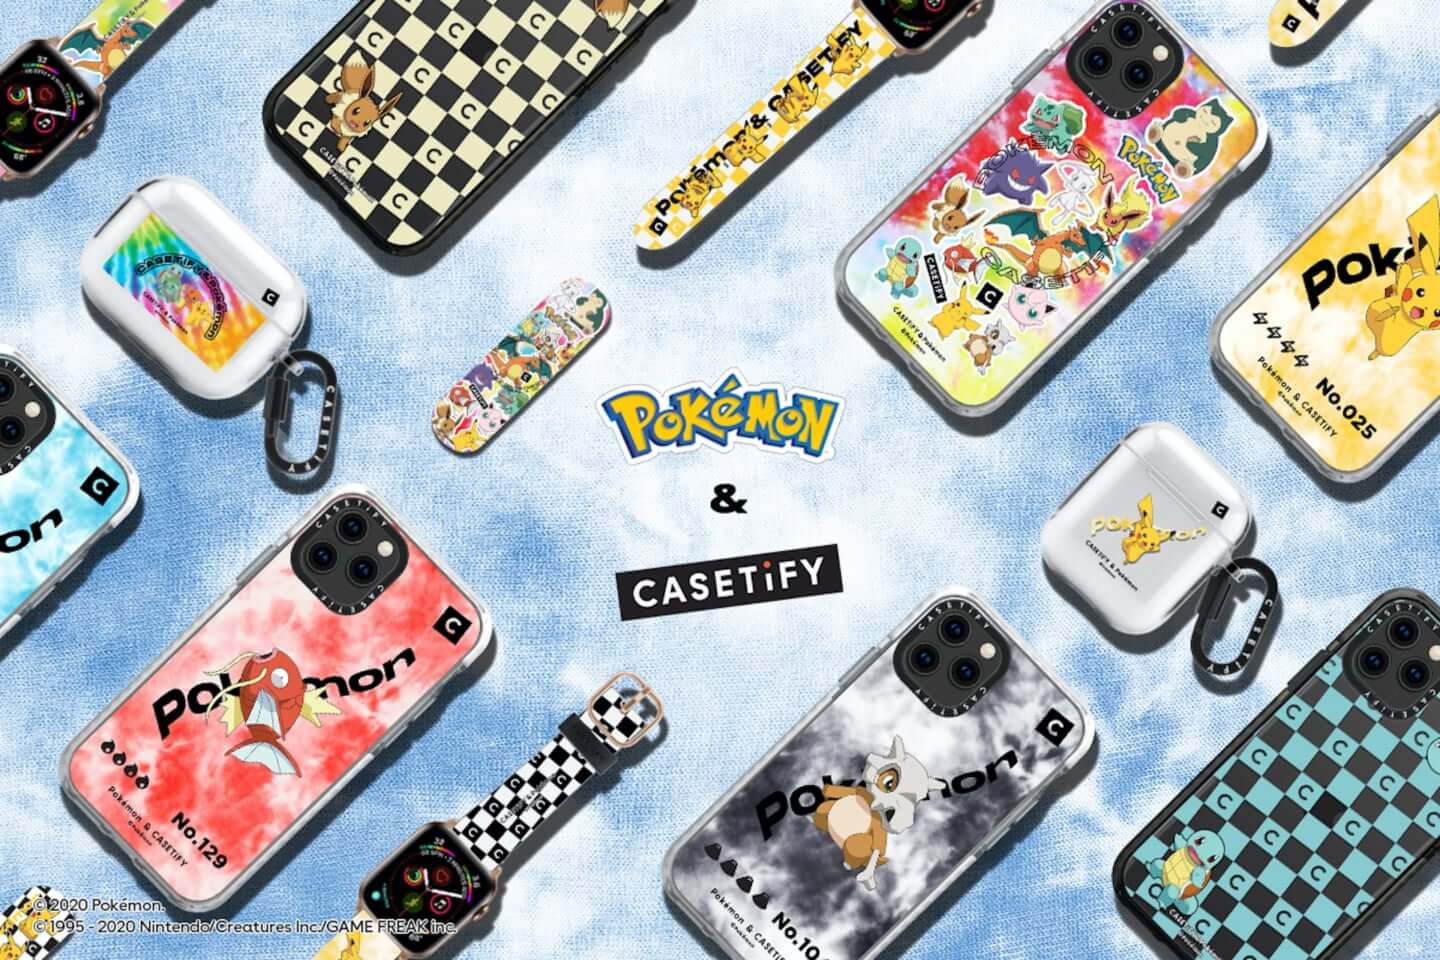 CASETiFY & Pokémon